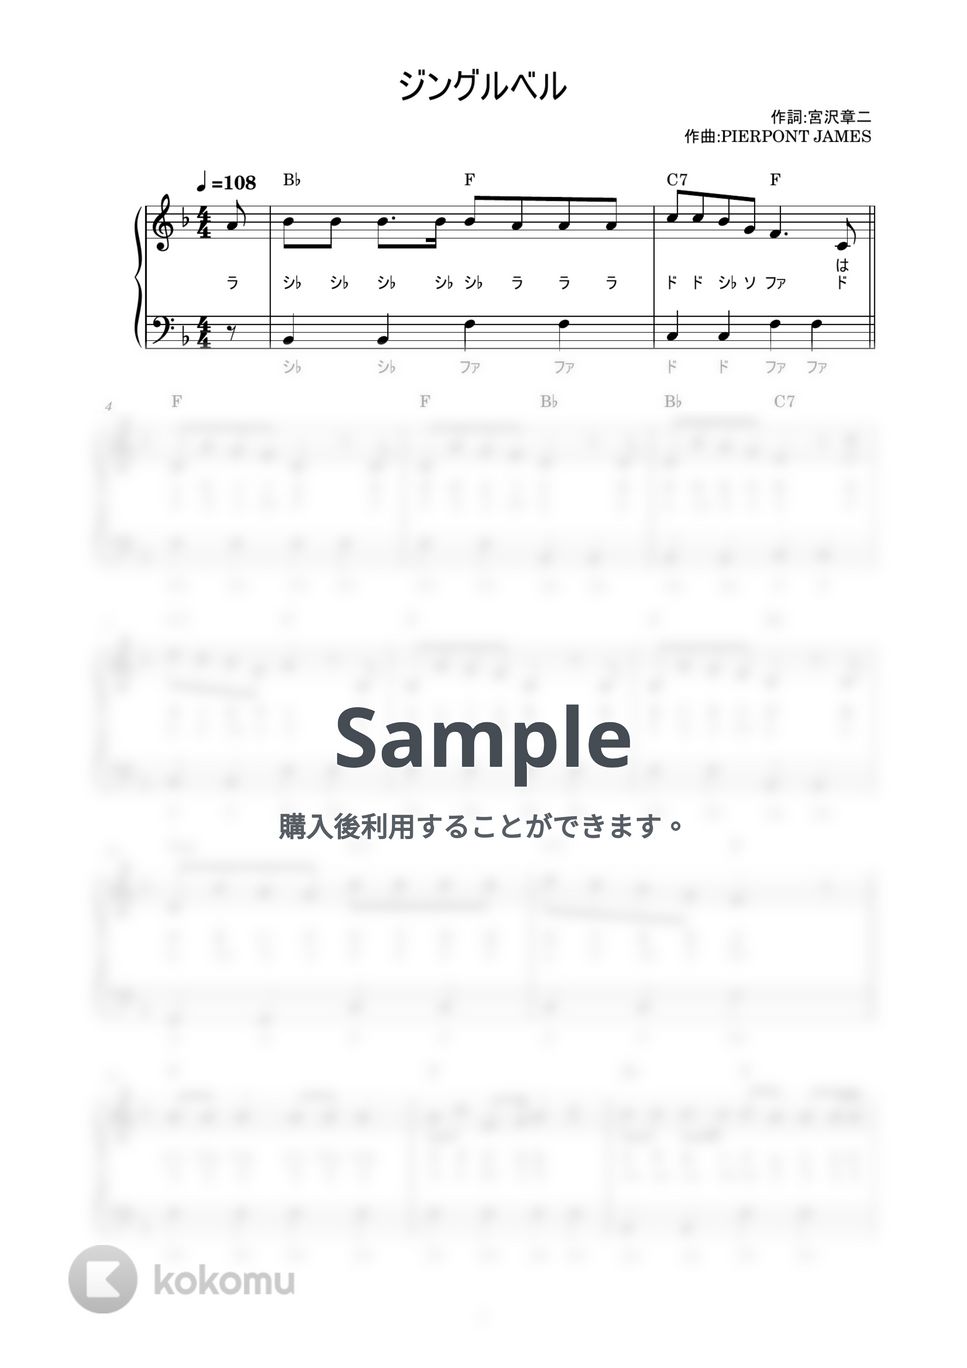 ジングルベル (かんたん / 歌詞付き / ドレミ付き / 初心者) by piano.tokyo